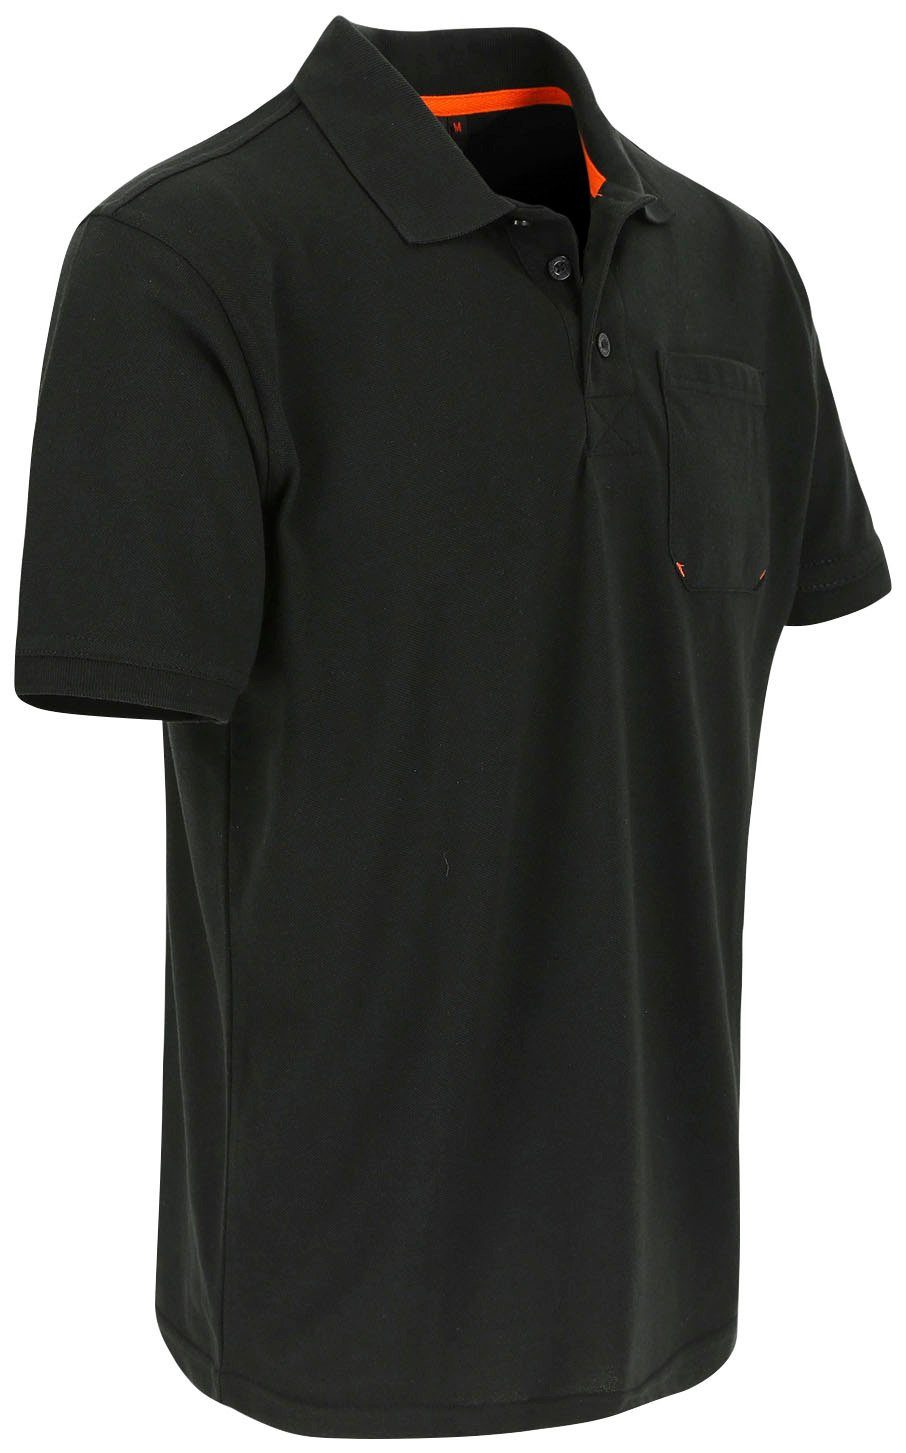 Farben Kurzärmlig und Bündchen, Poloshirt Herock verschiedene schwarz Leo 1 Brusttasche, Rippstrick-Kragen Polohemd